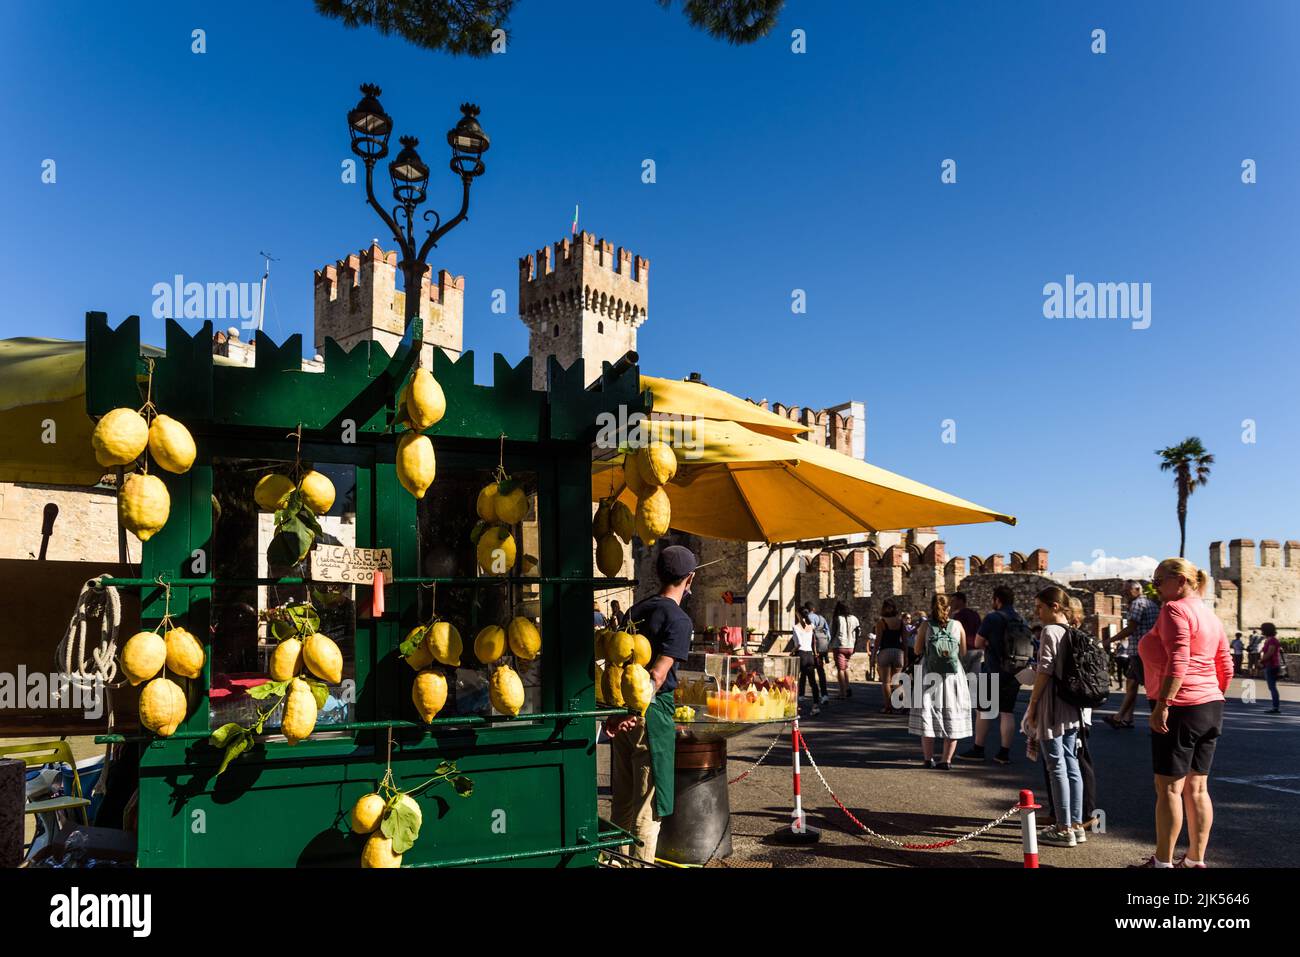 Sirmione, Italie - 20 septembre 2021 : Esplanade à l'entrée du château de Sirmione, une rue vend du jus de citron traditionnel. Banque D'Images